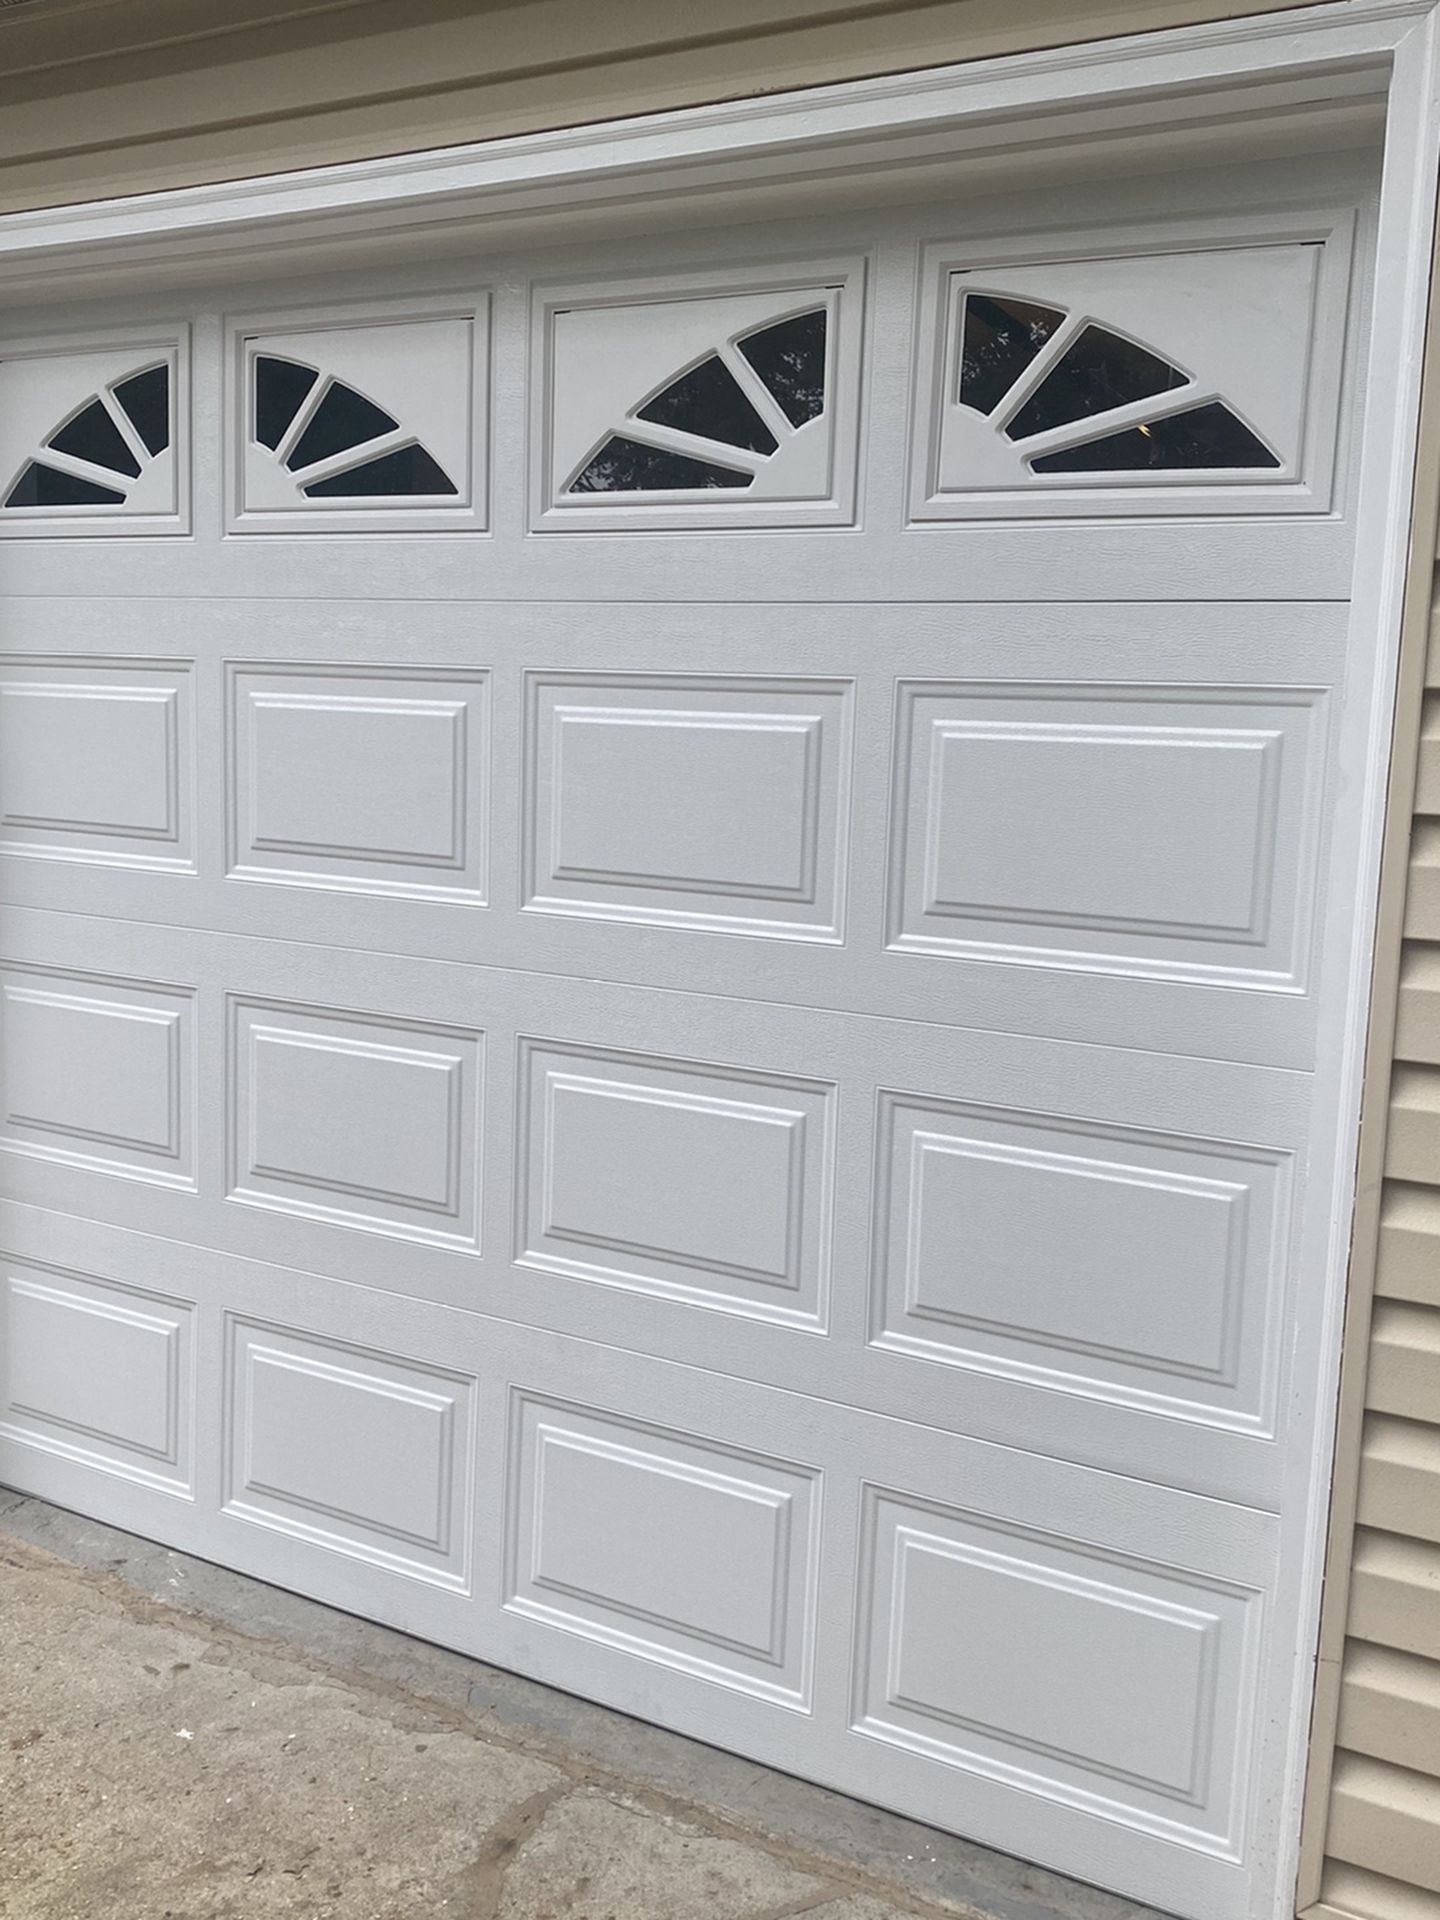 Garage Doors 8x7